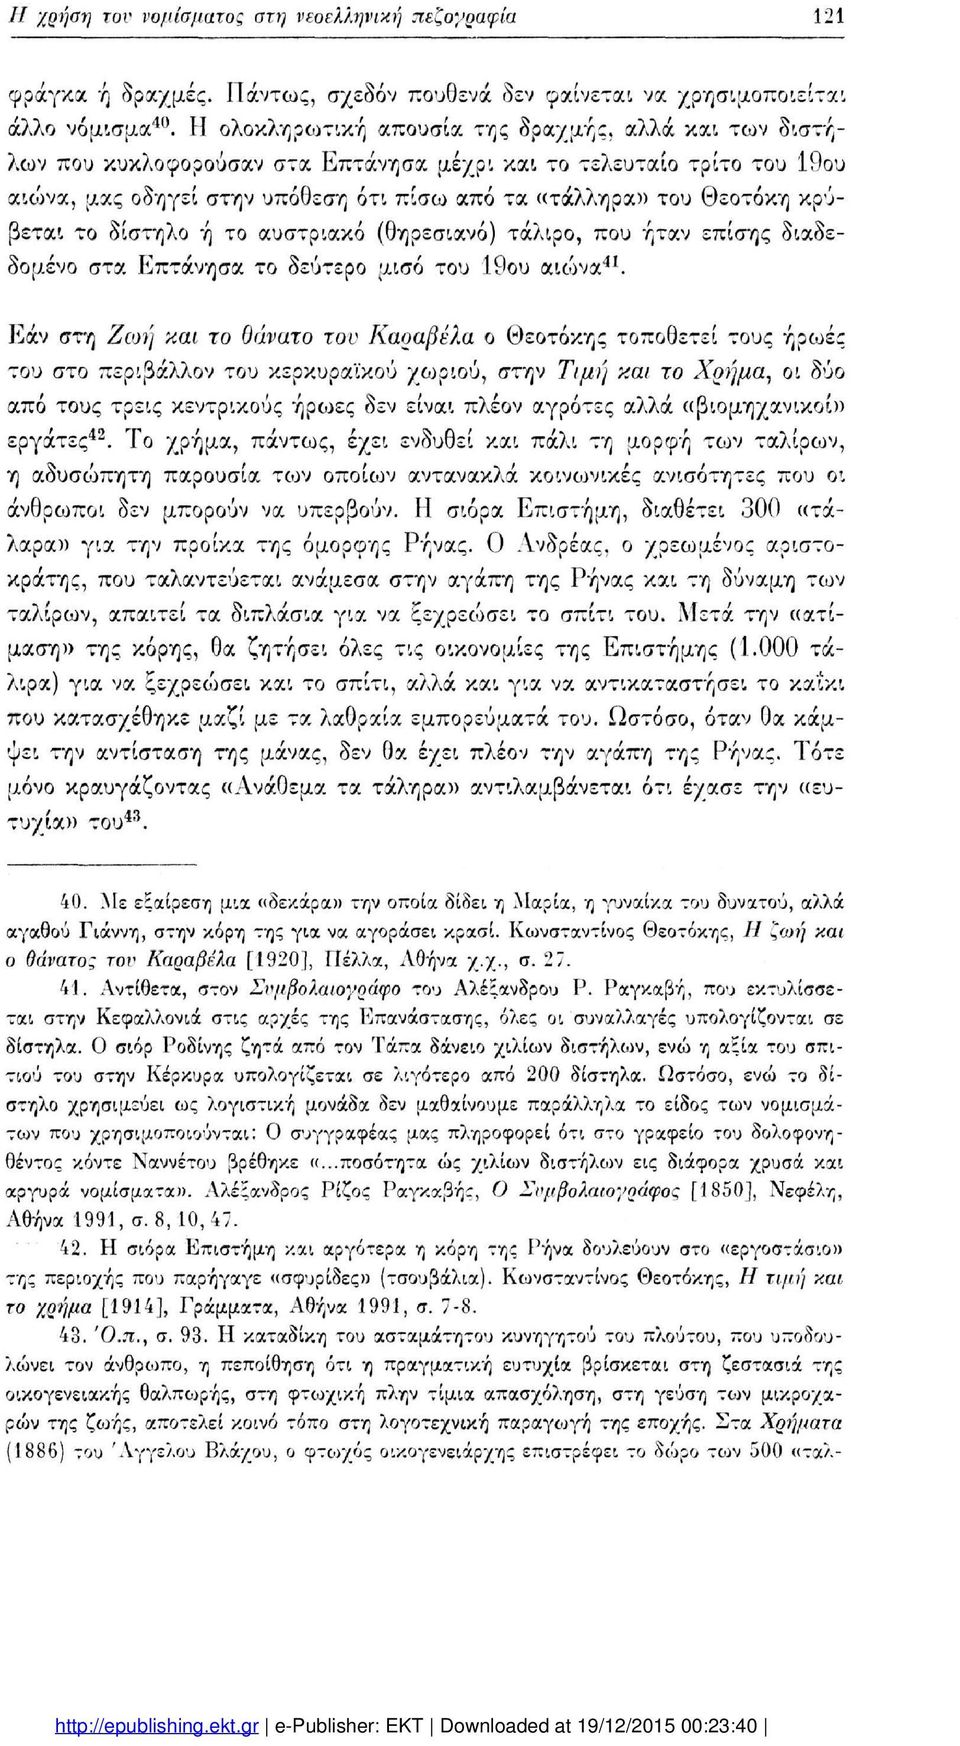 κρύ βεται το δίστηλο ή το αυστριακό (θηρεσιανό) τάλιρο, που ήταν επίσης διαδε δομένο στα Επτάνησα το δεύτερο μισό του 19ου αιώνα41.